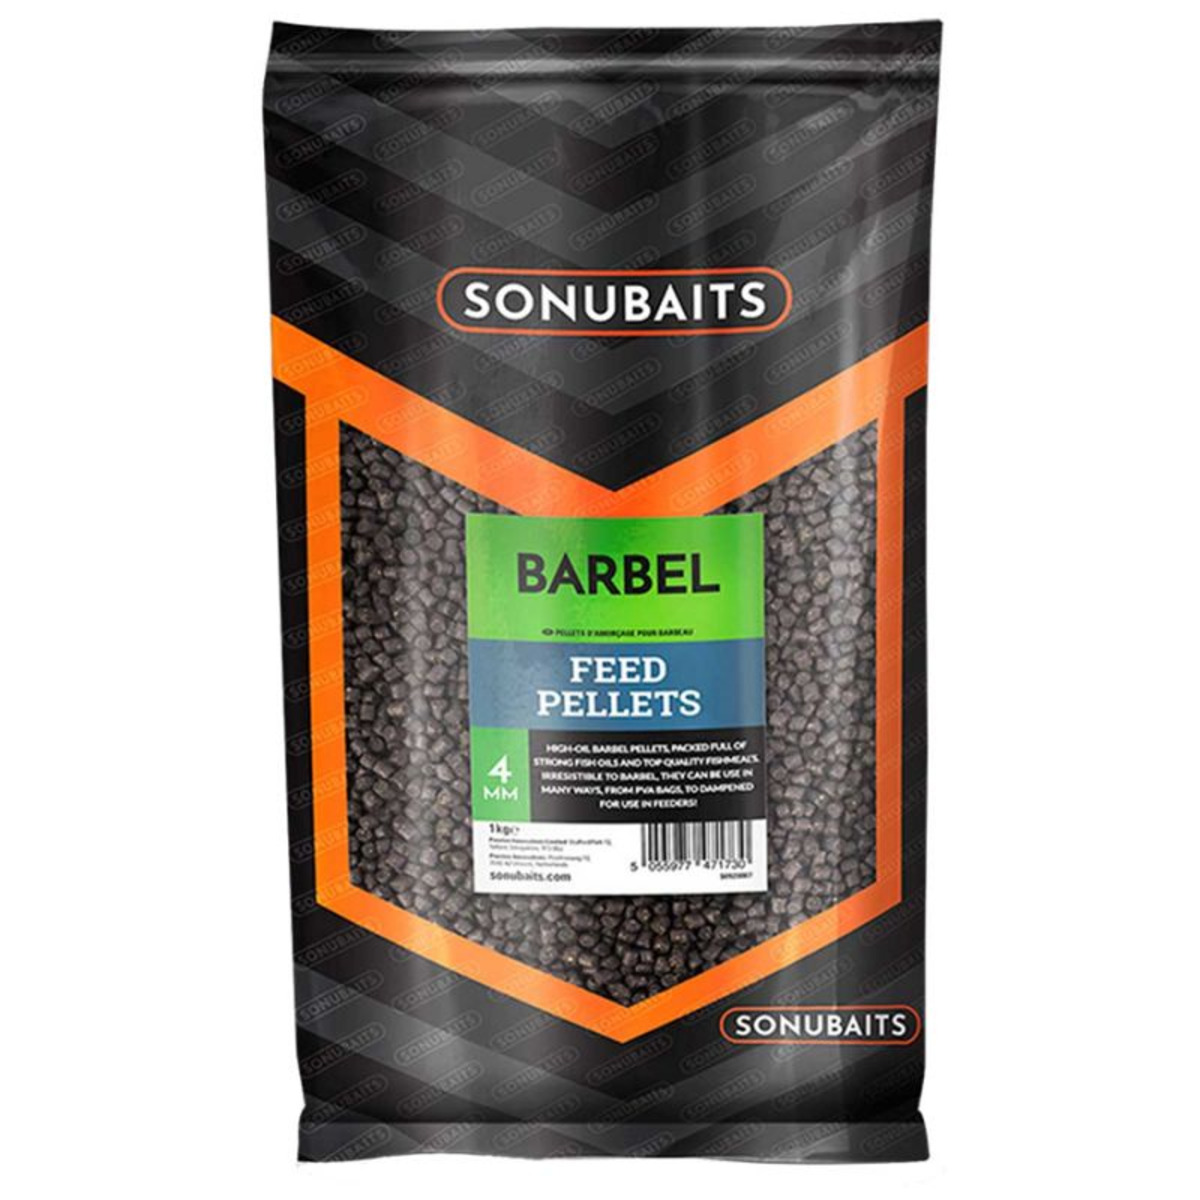 Sonubaits Barbel Feed Pellets - 4 mm - 1 kg